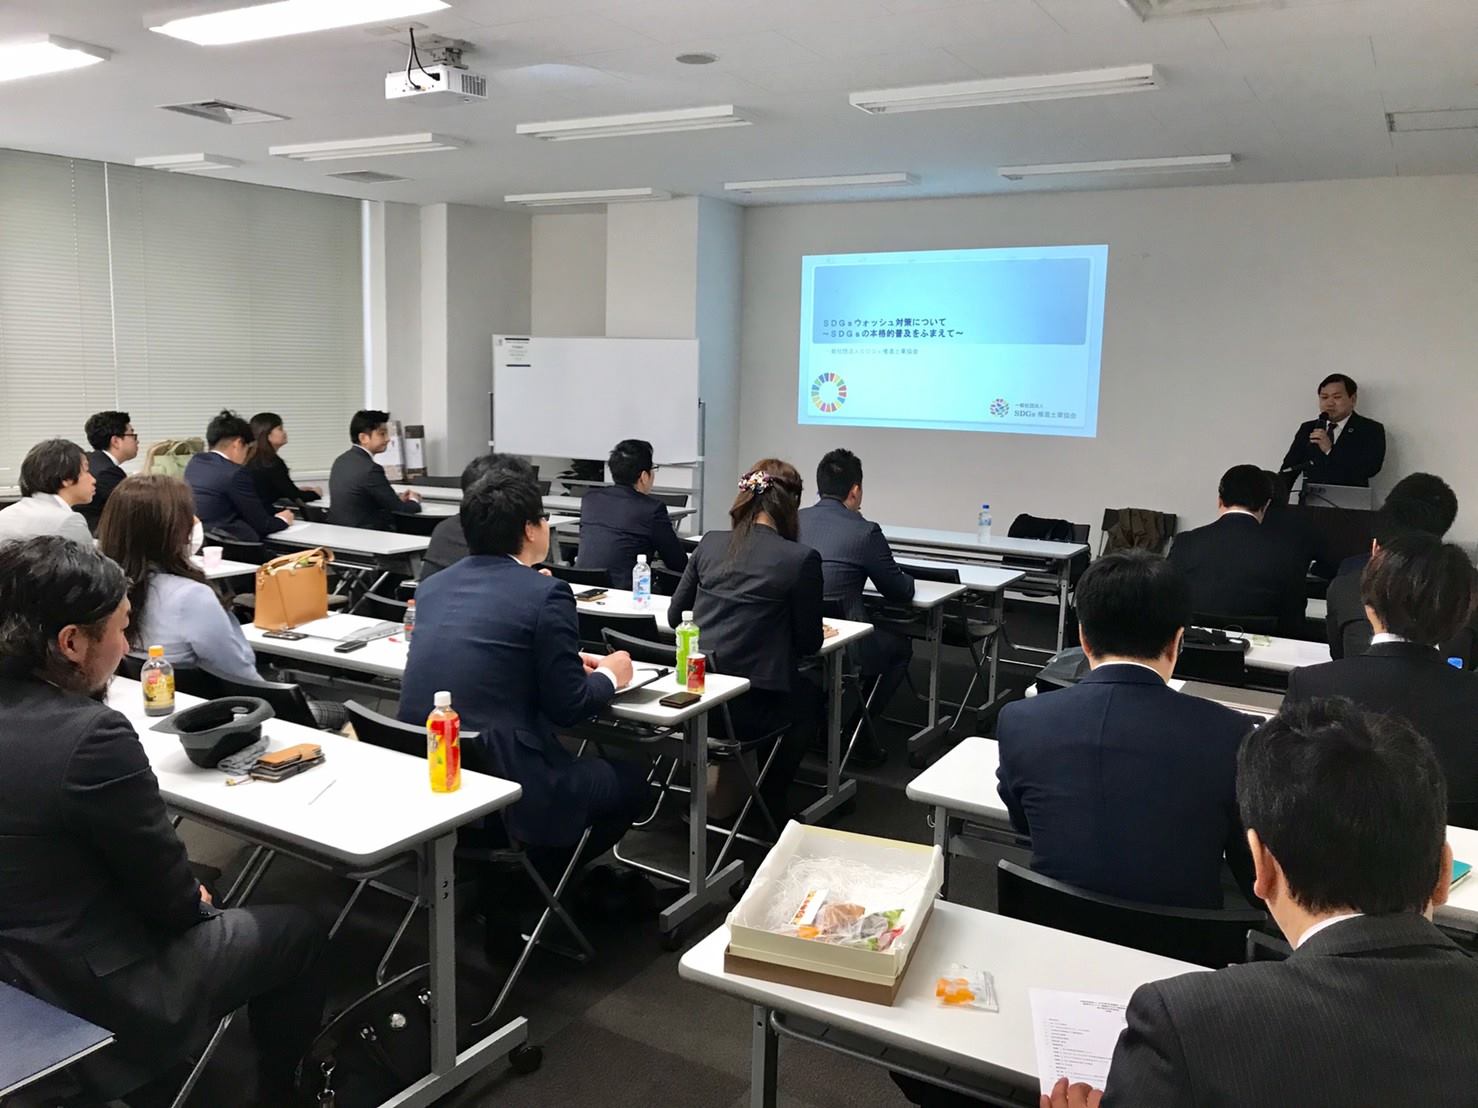 活動報告 日本青年会議所経済グループ国際ビジネス連携委員会様 主催勉強会での講師講演の写真